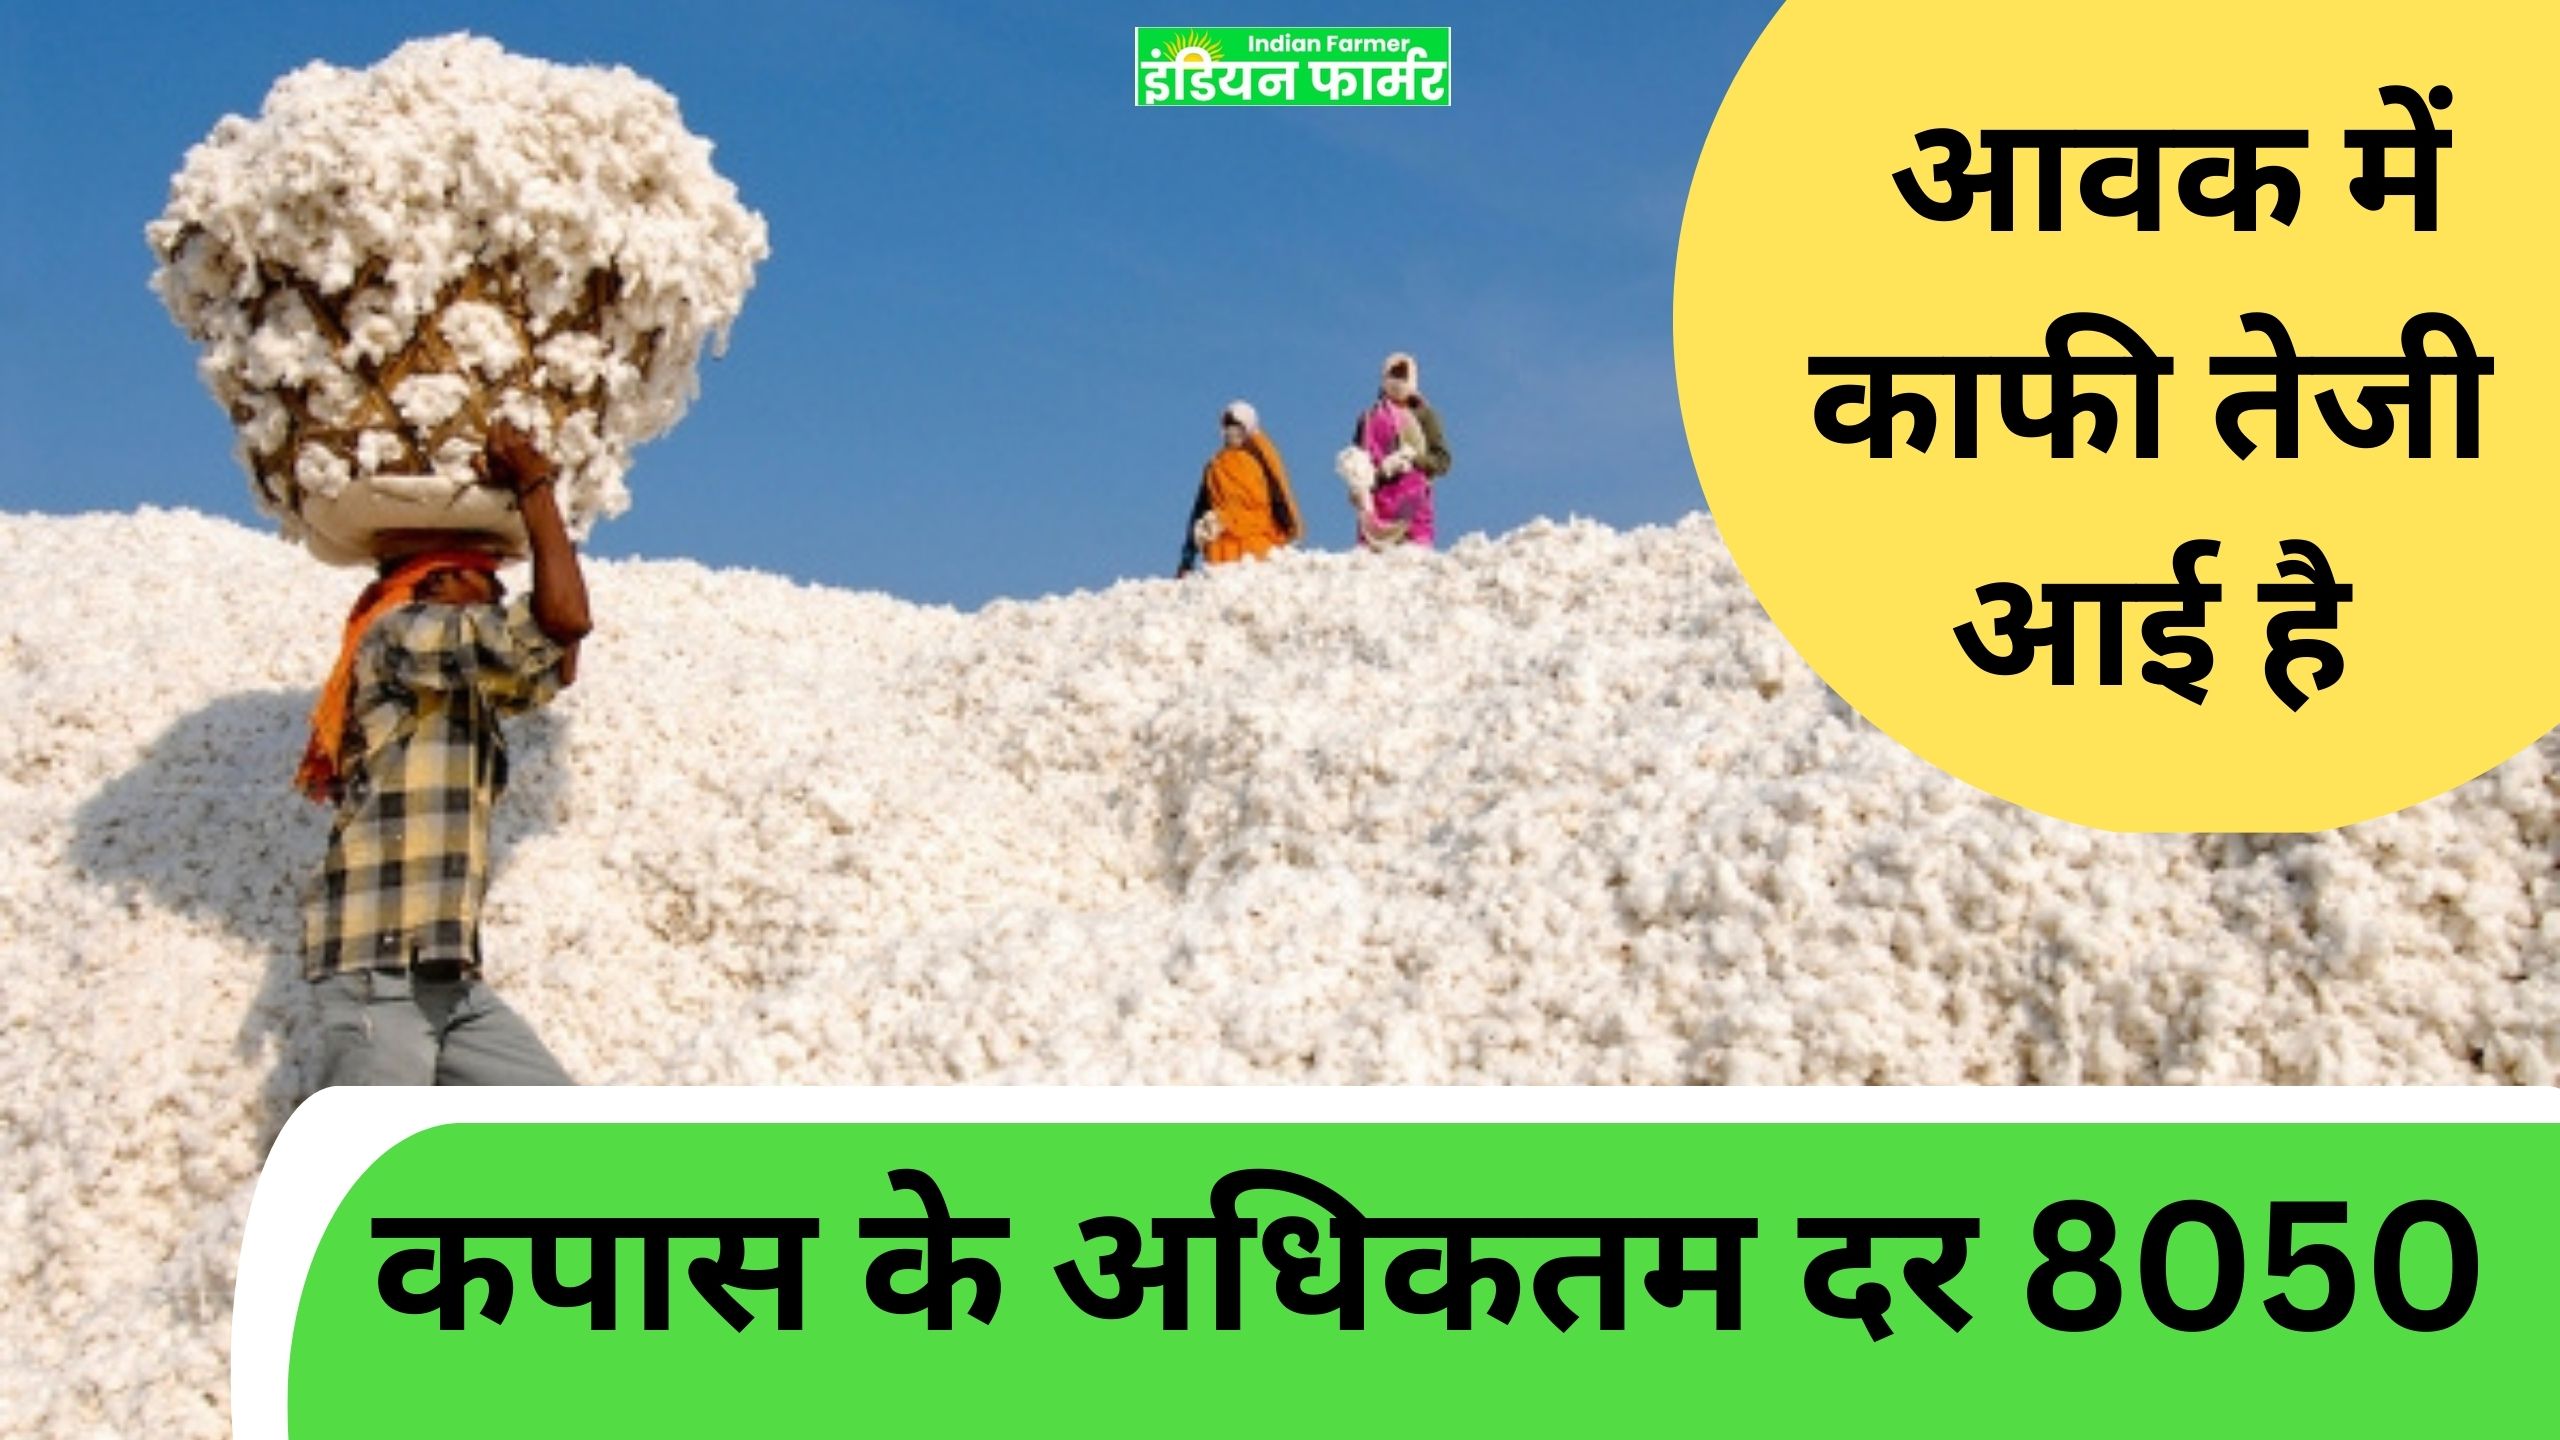 cotton market कपास के लिए अधिकतम दर 8050 रुपये है।  